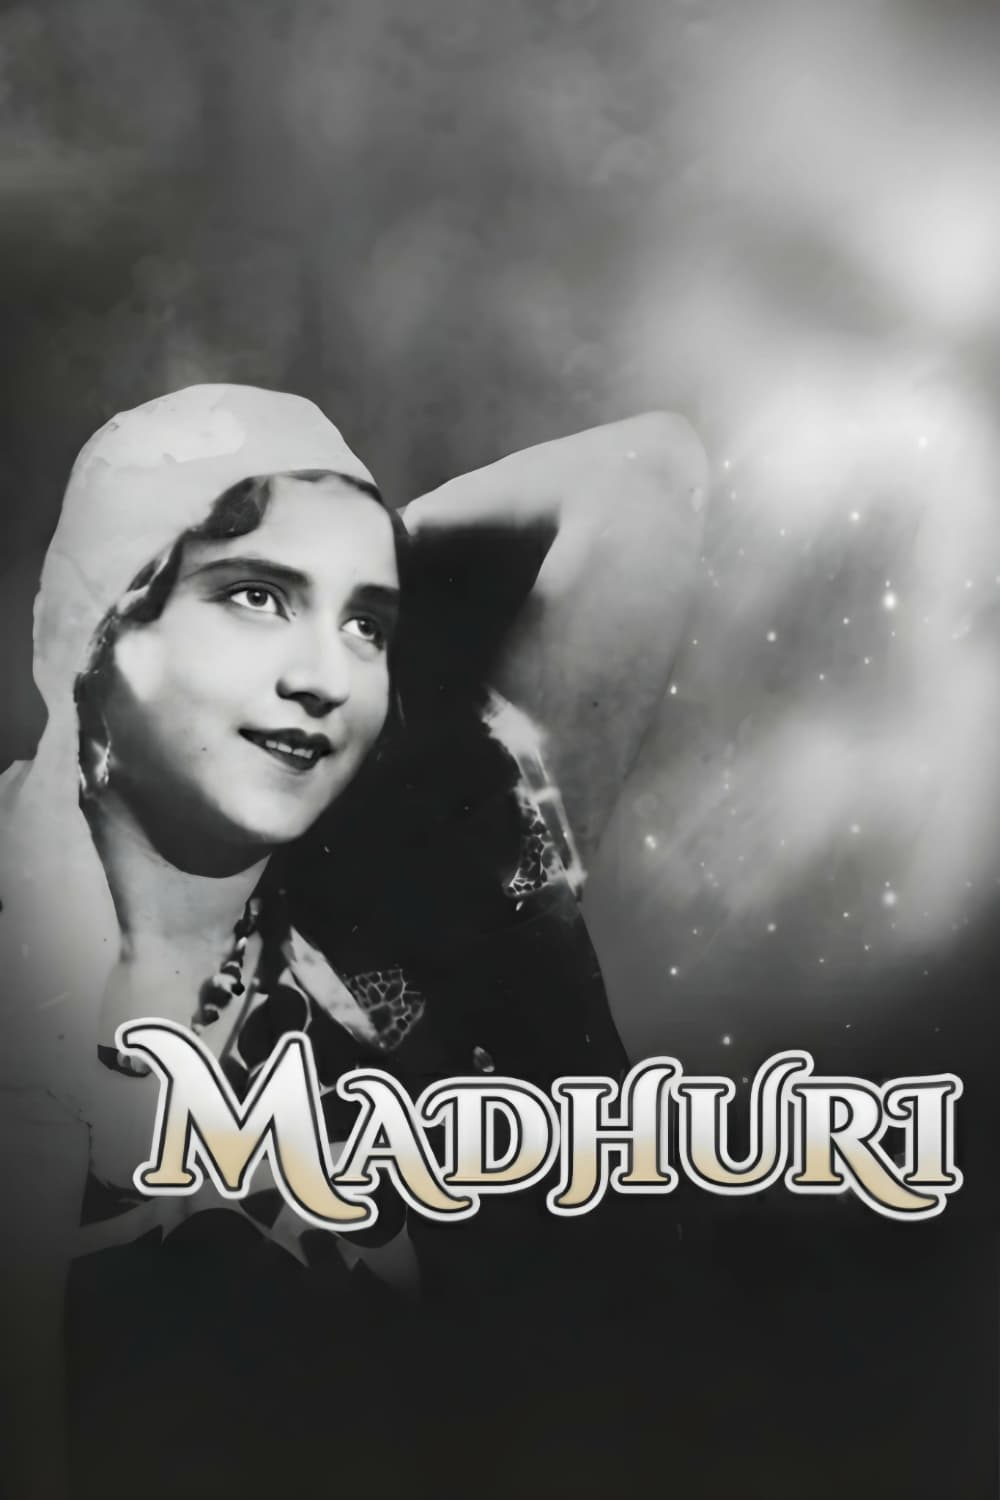 Madhuri